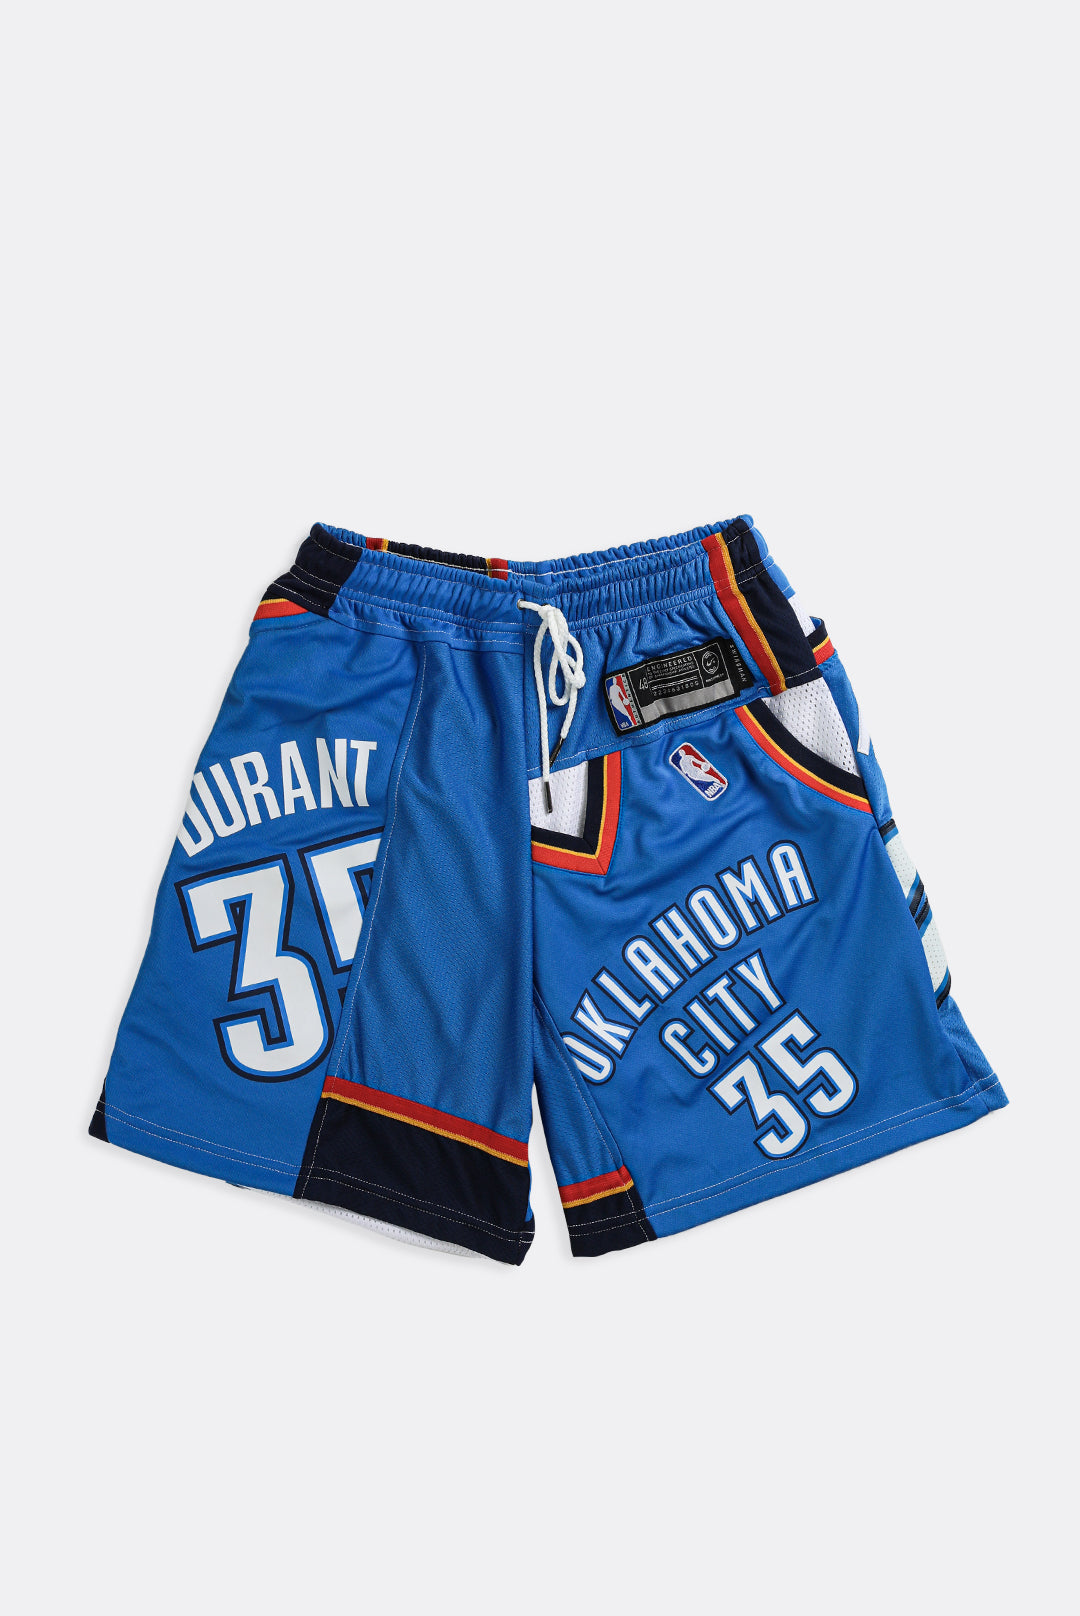 NBA, Shorts, Bluewhite Okc Thunder Shorts